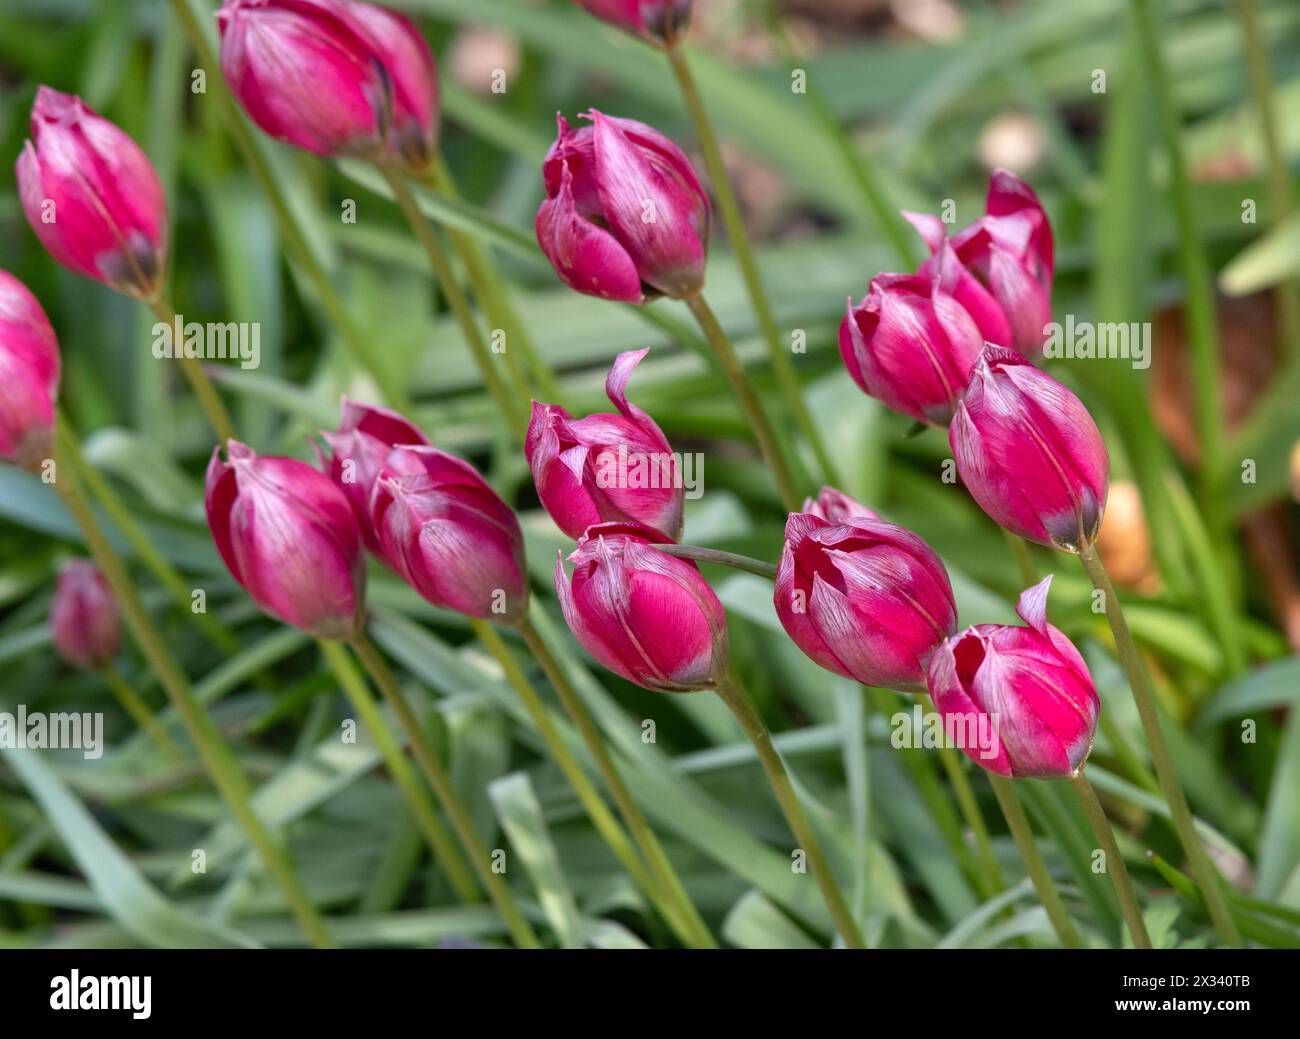 Tulipa hageri 'Little Beauty' Stock Photo